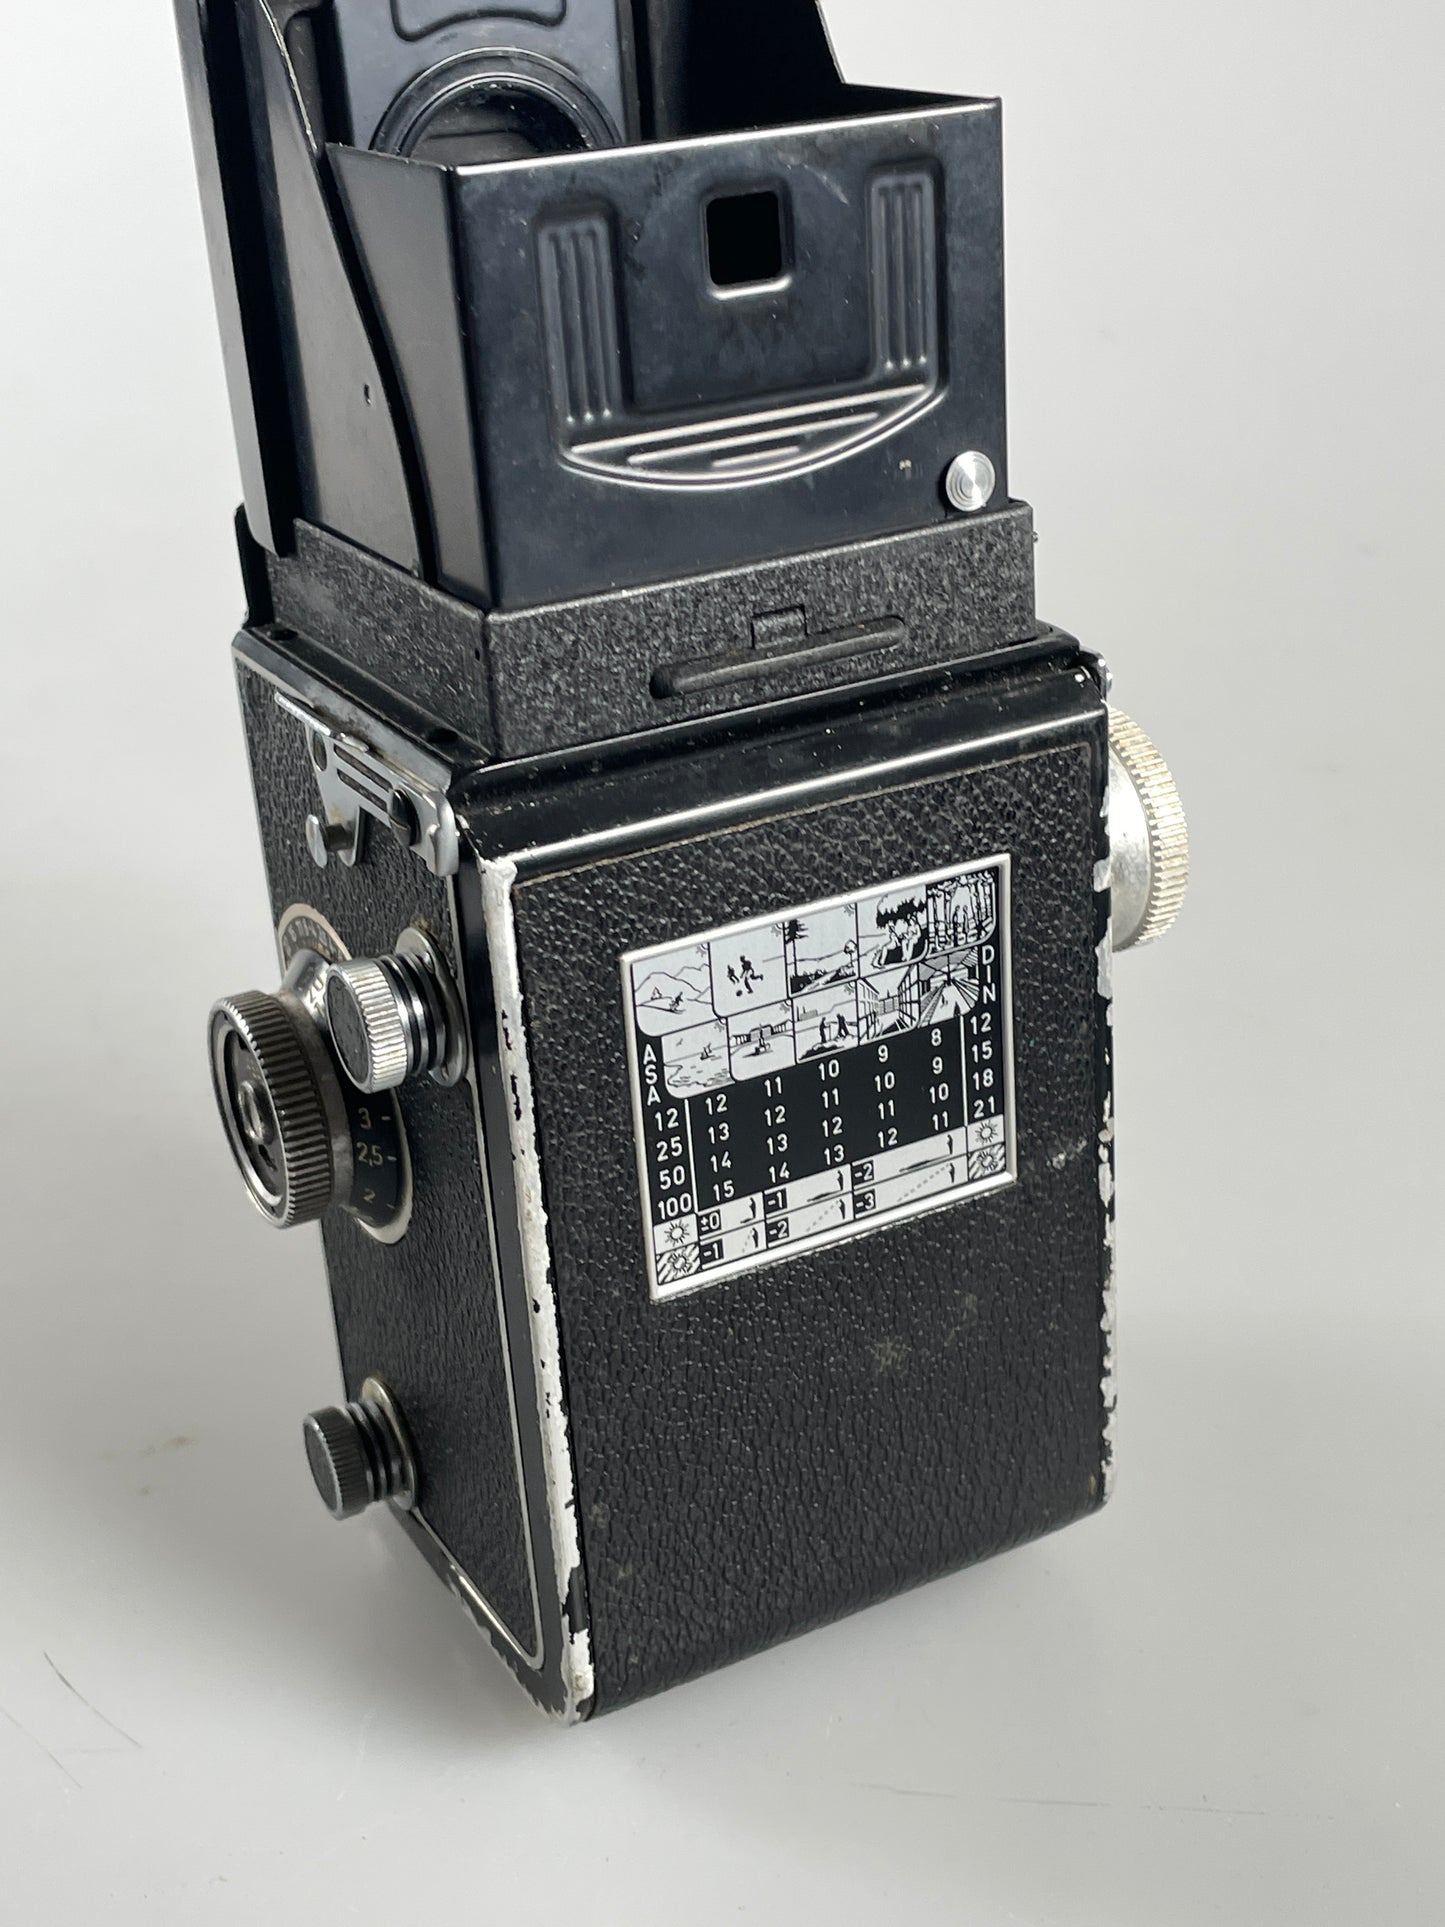 Rollei Rolleicord VA model II TLR Medium Format Camera 75mm f3.5 Xenar Lens TLR